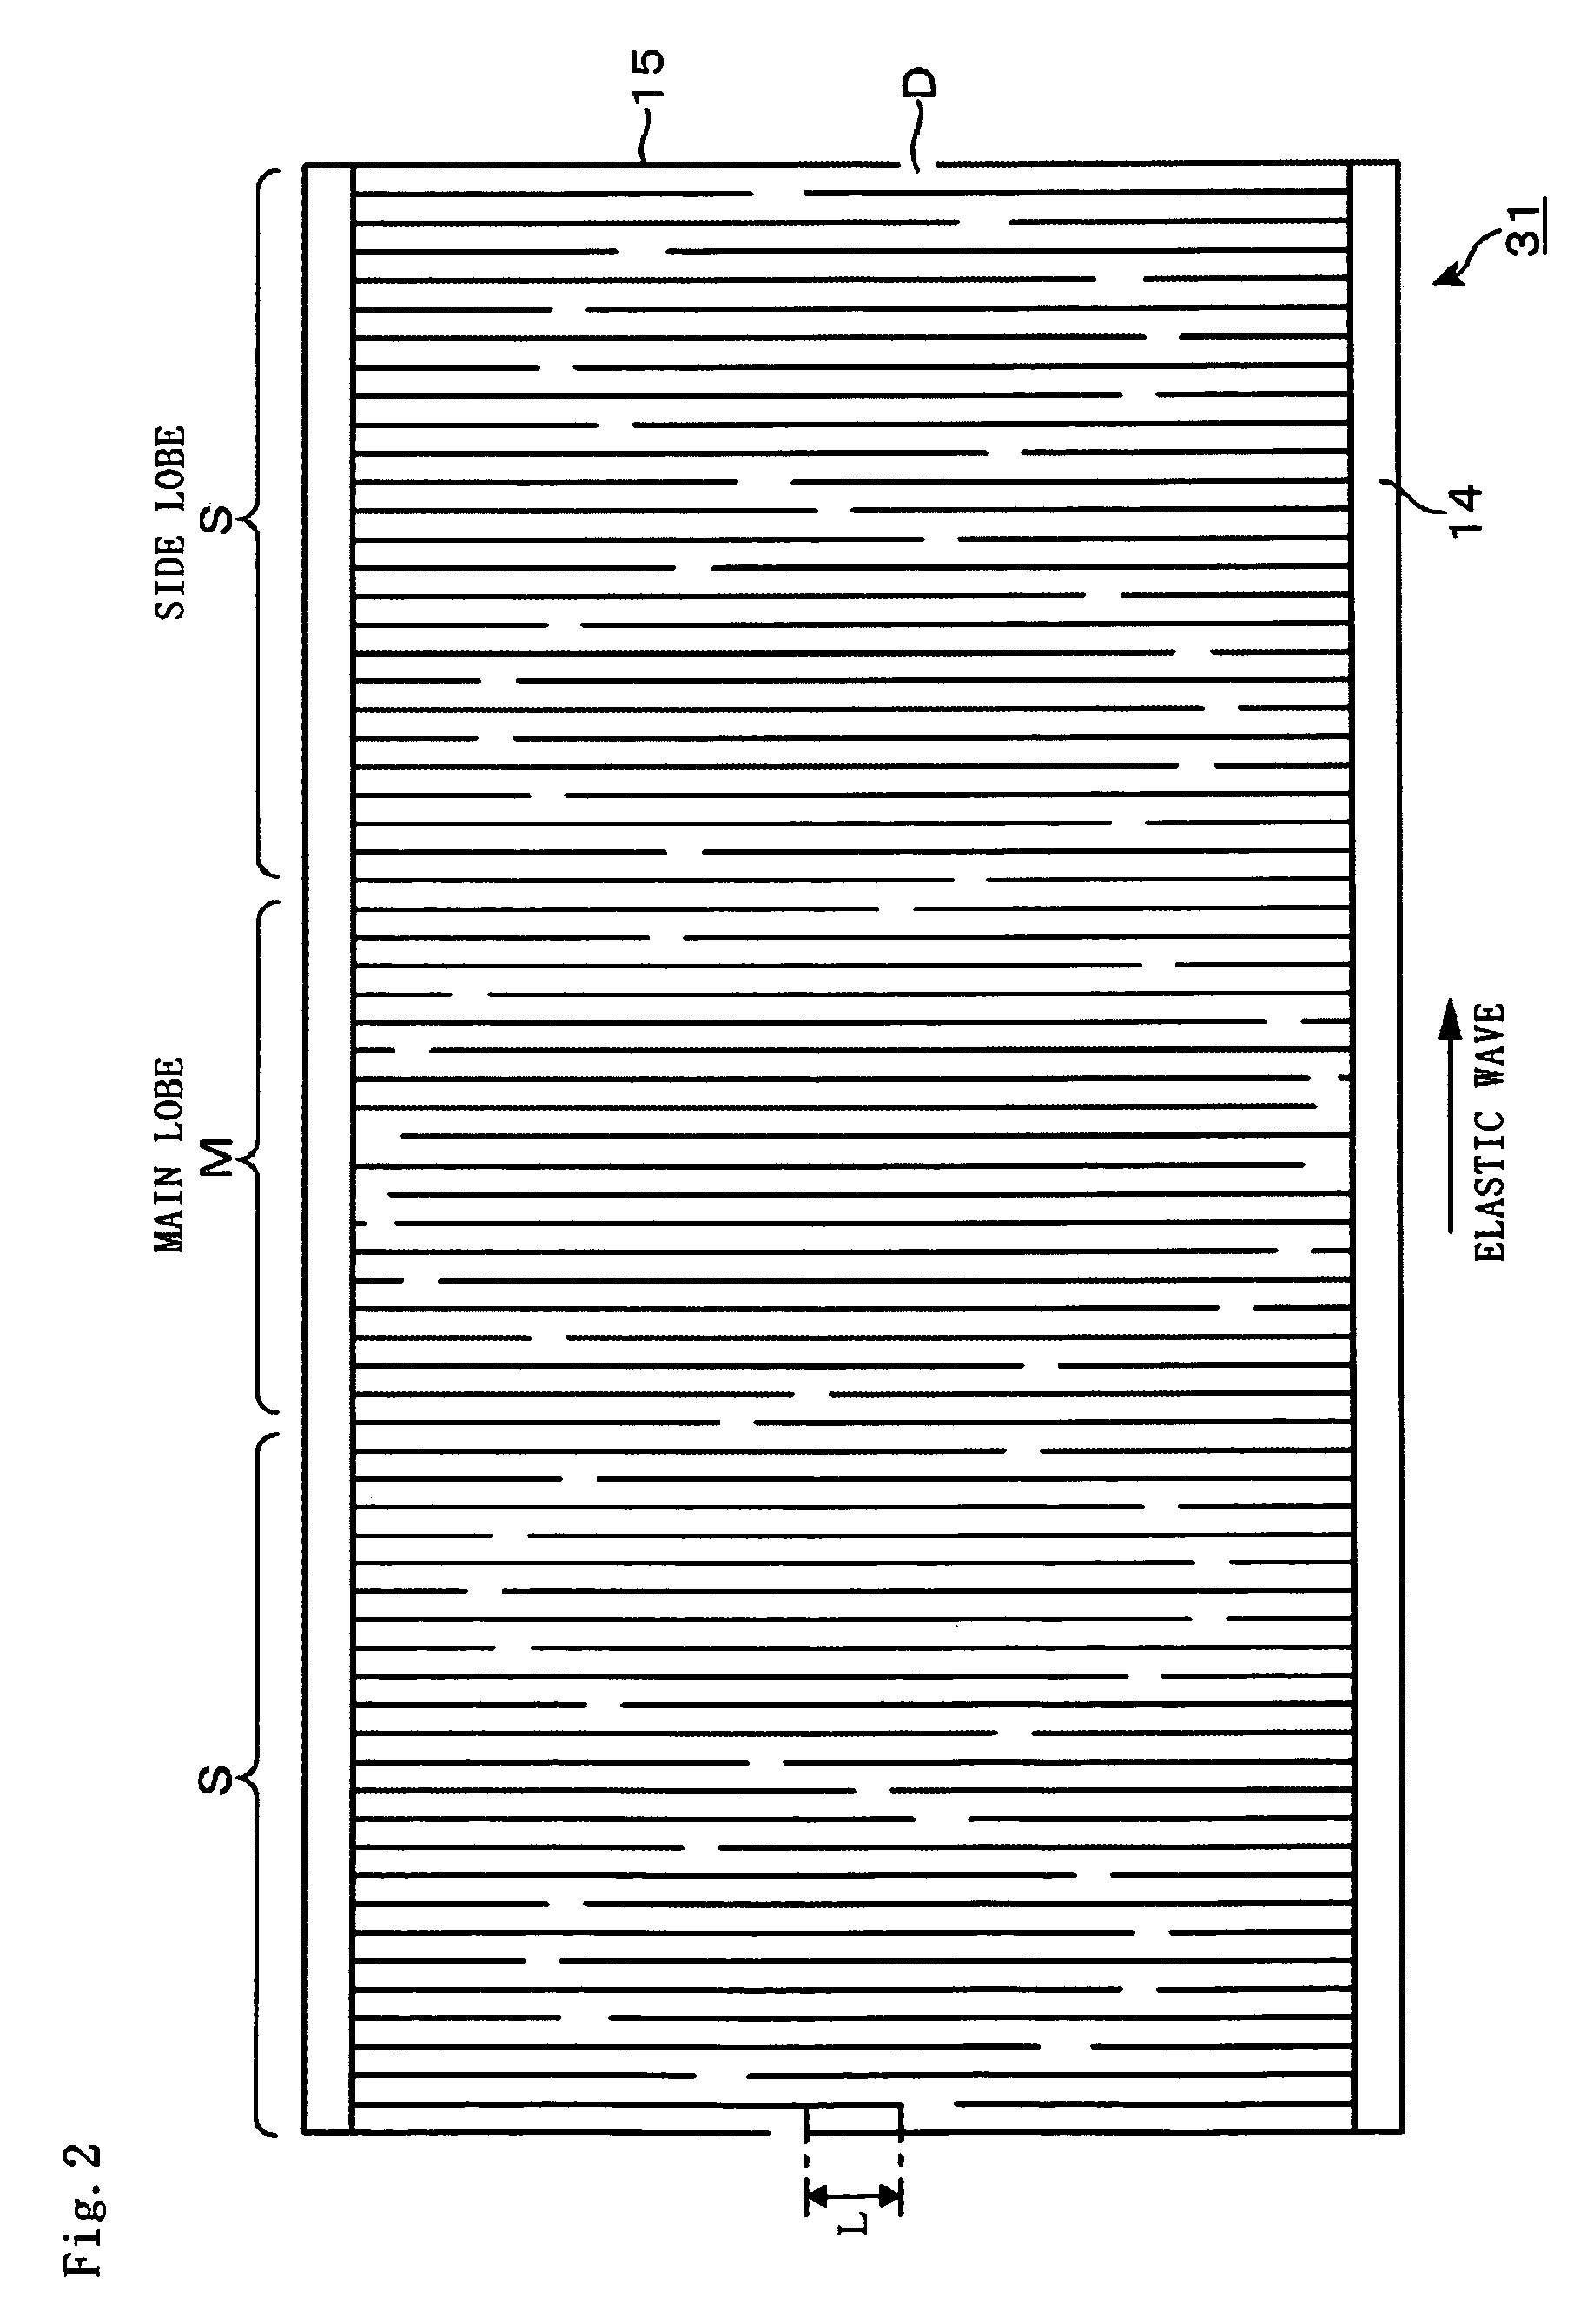 Transversal type filter